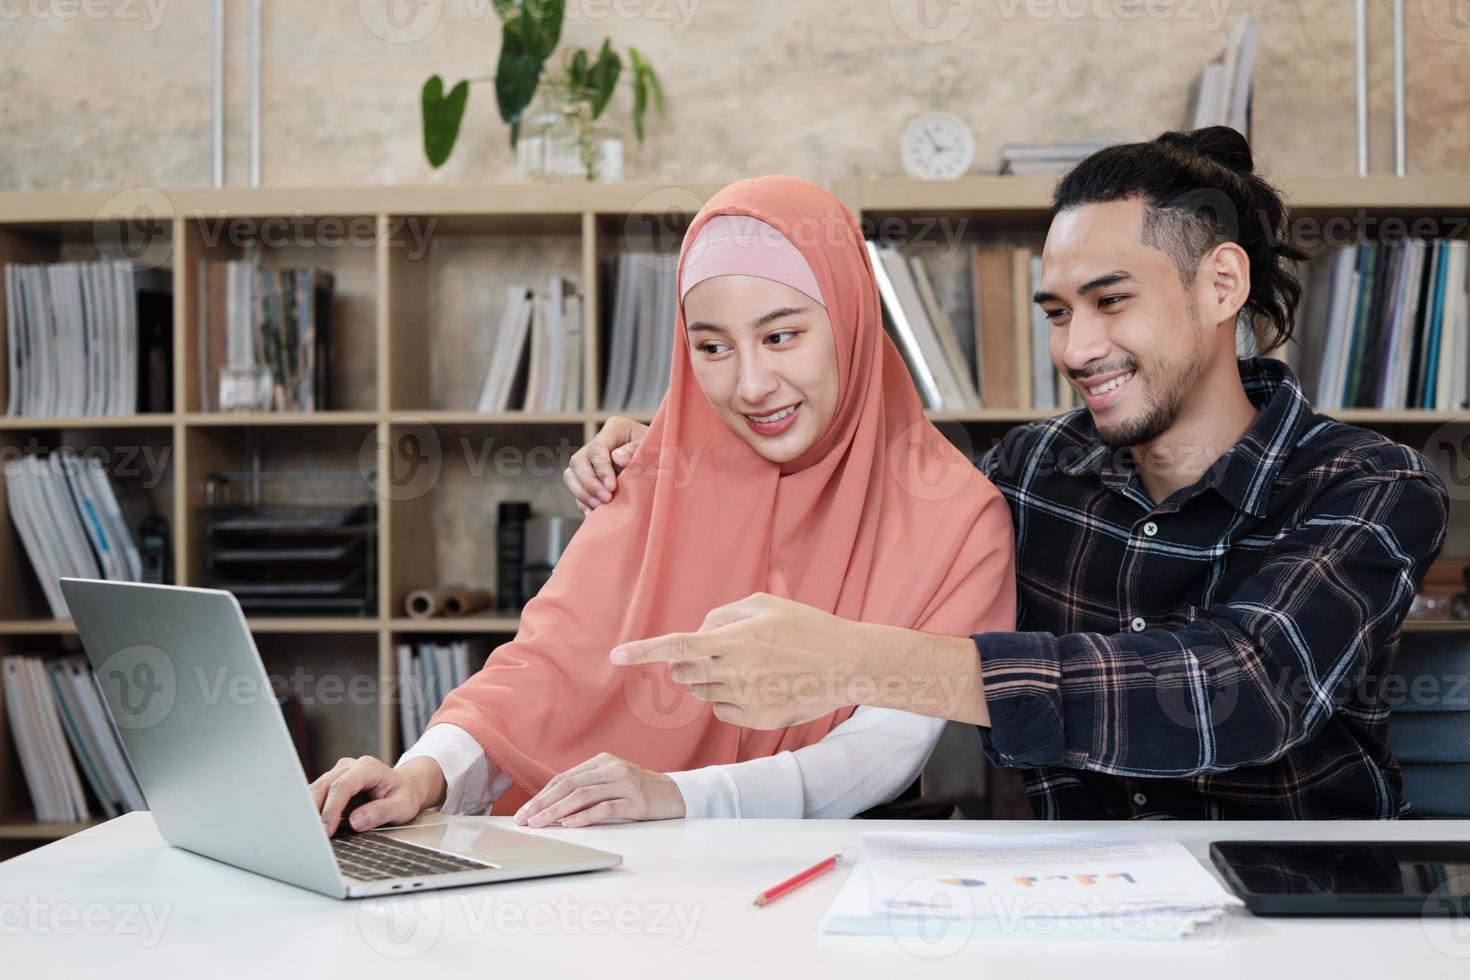 twee jonge startende collega's personen die islamitische koppels zijn, praten met een glimlach over succes in een e-commercebedrijf. gebruik laptop voor online communicatie via internet in een klein kantoor. foto